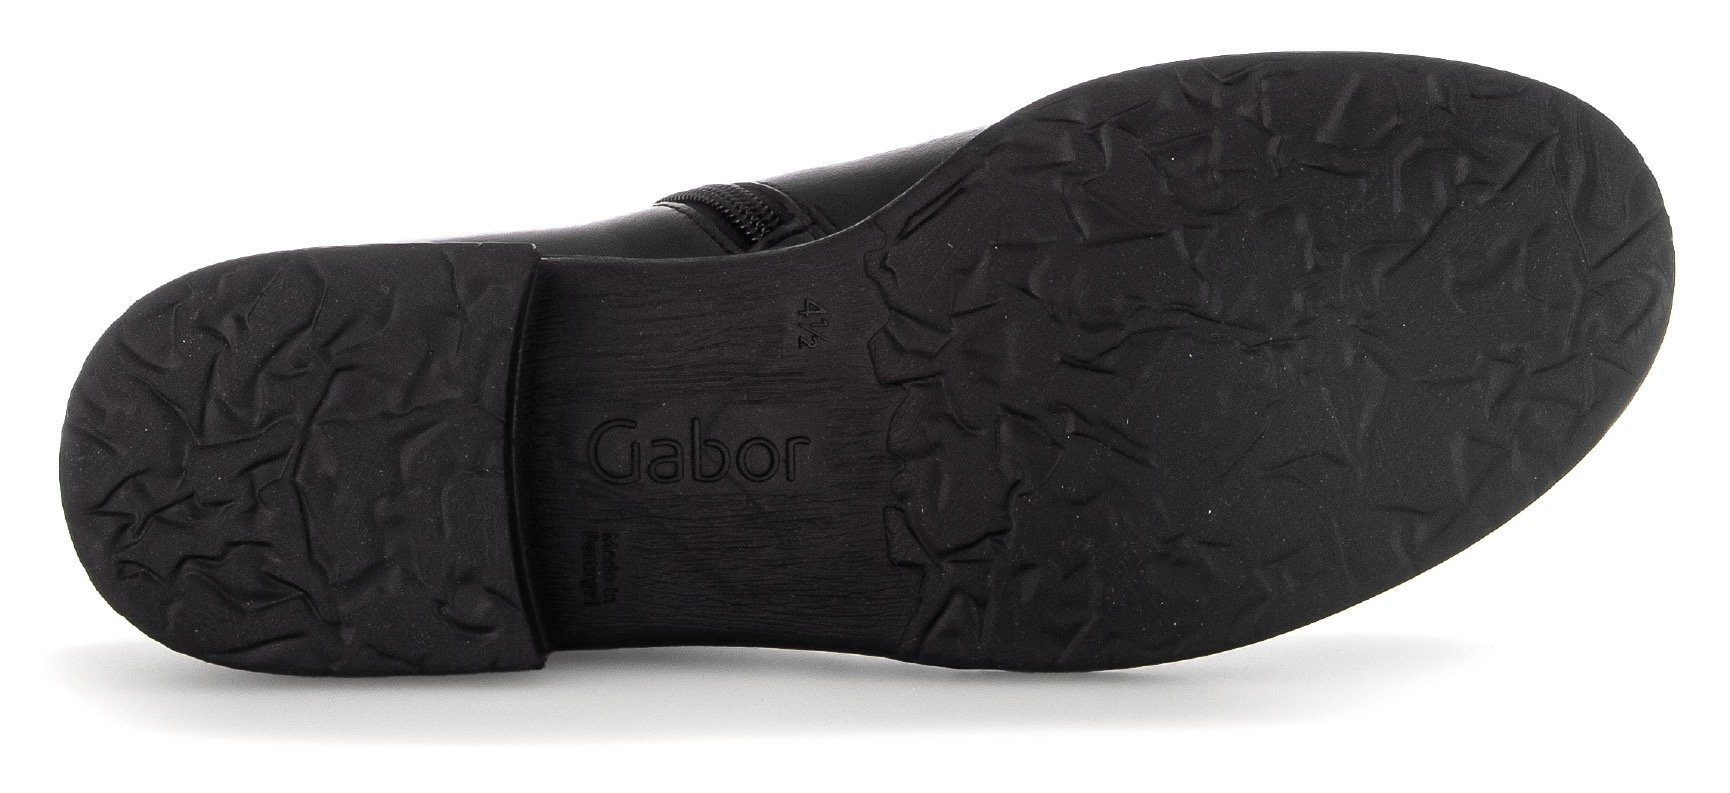 Best mit Fitting-Ausstattung Gabor schwarz Stiefelette